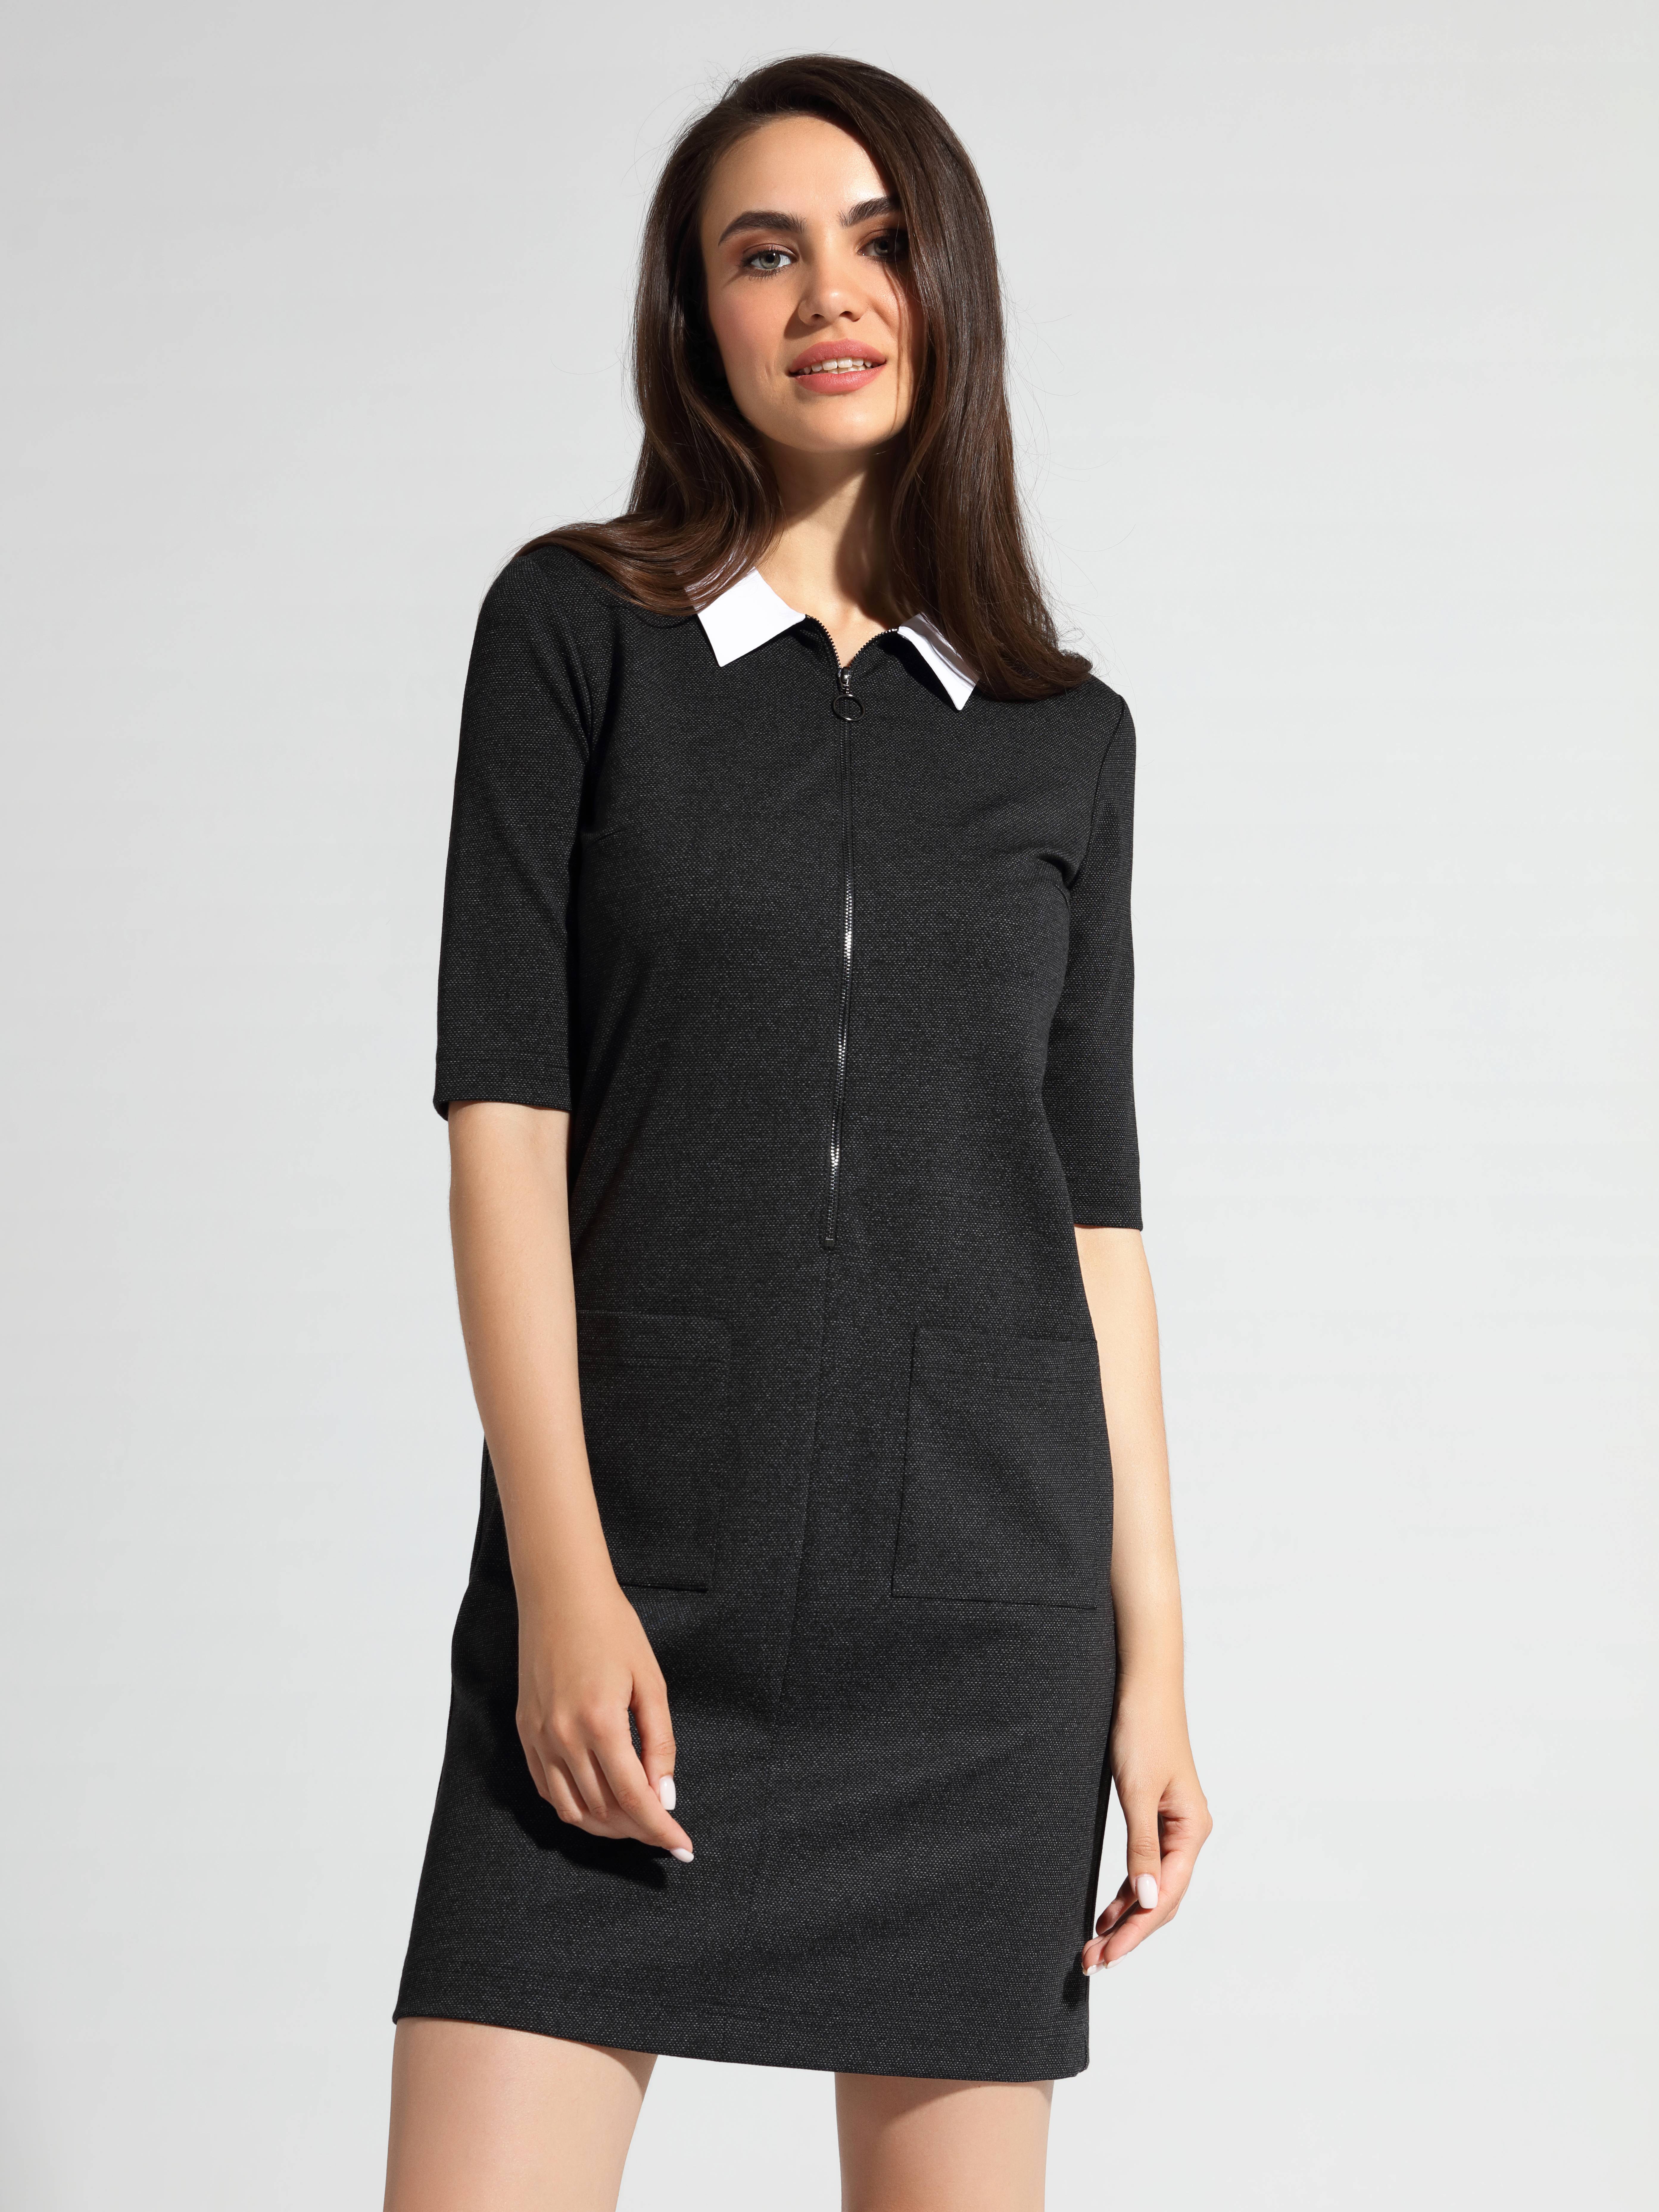 Платье с металлической молнией и воротником LPL 1056 Conte ⭐️, цвет black melange, размер 164-100-106 - фото 1